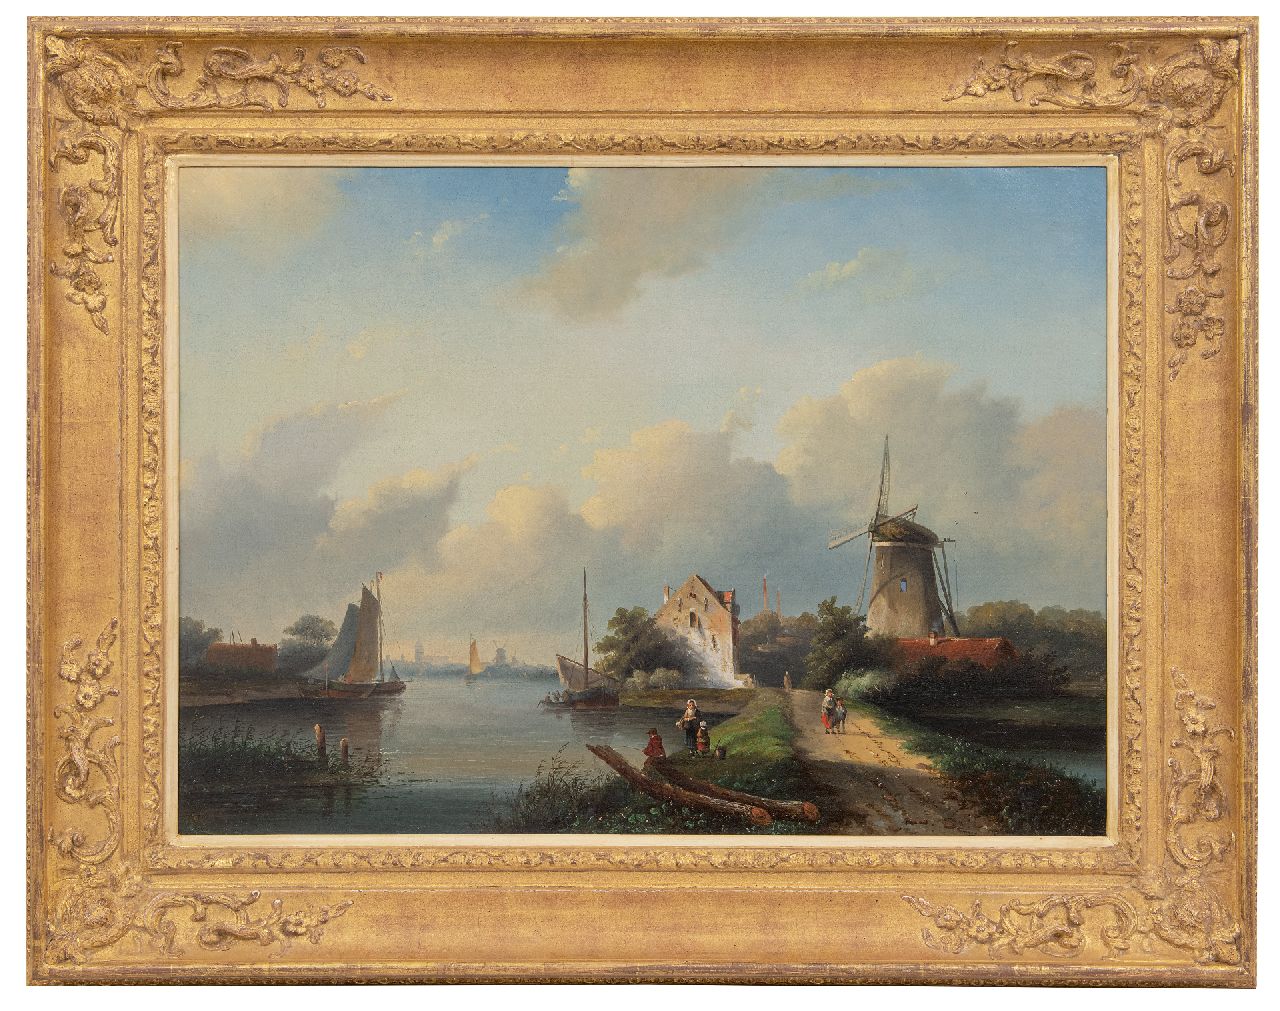 Spohler J.J.  | Jan Jacob Spohler | Schilderijen te koop aangeboden | Zomerlandschap met figuren bij een vaart, olieverf op doek 56,6 x 78,4 cm, gesigneerd linksonder